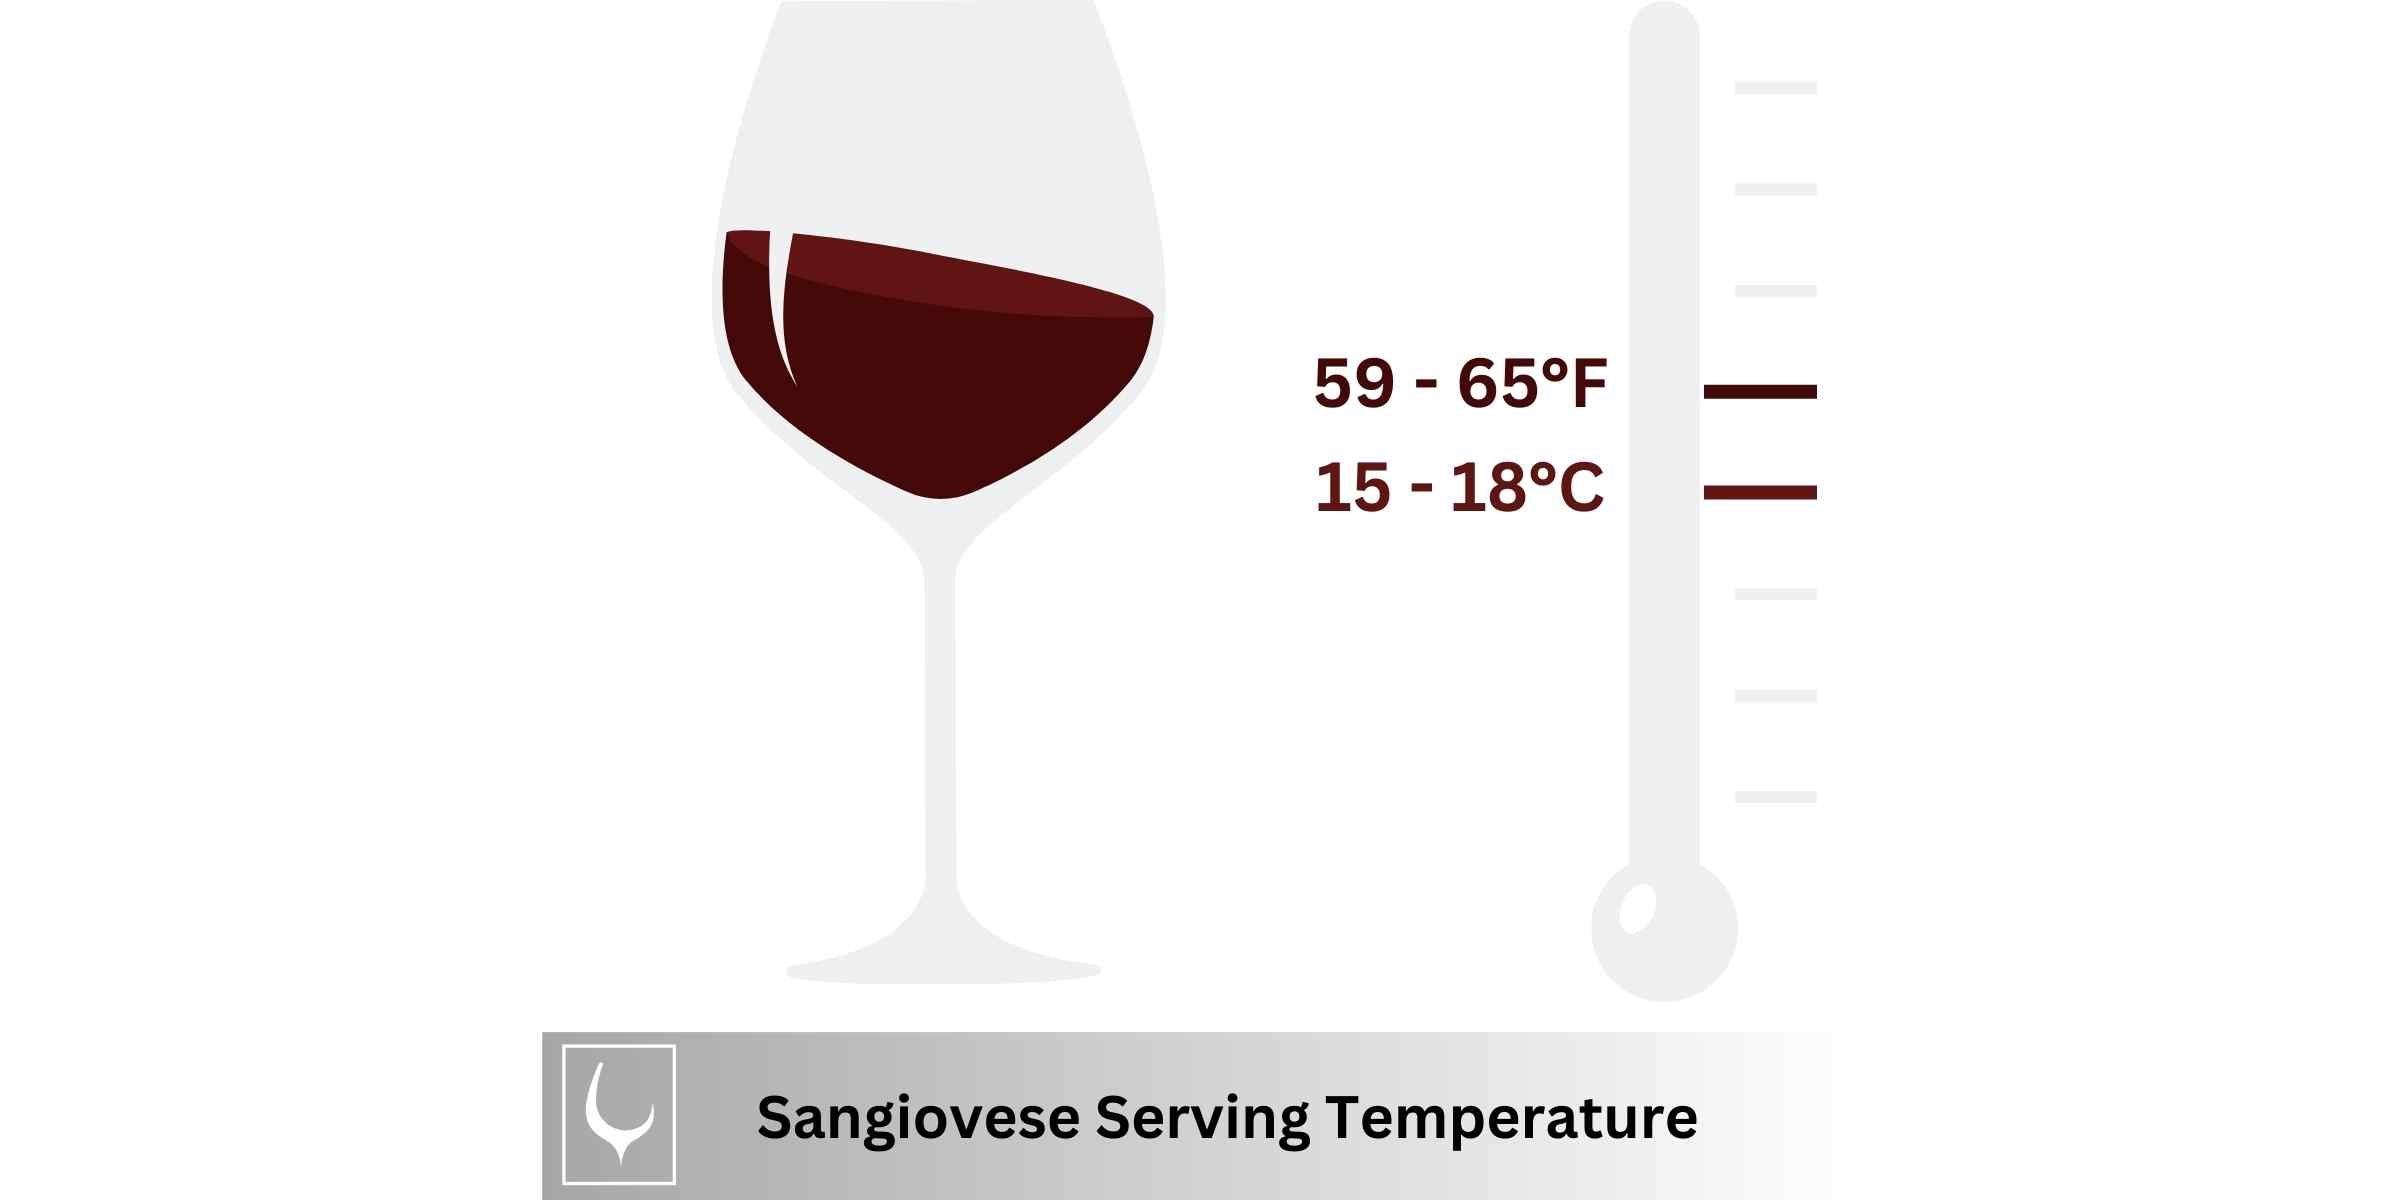 Sangiovese Serving Temperature Visual